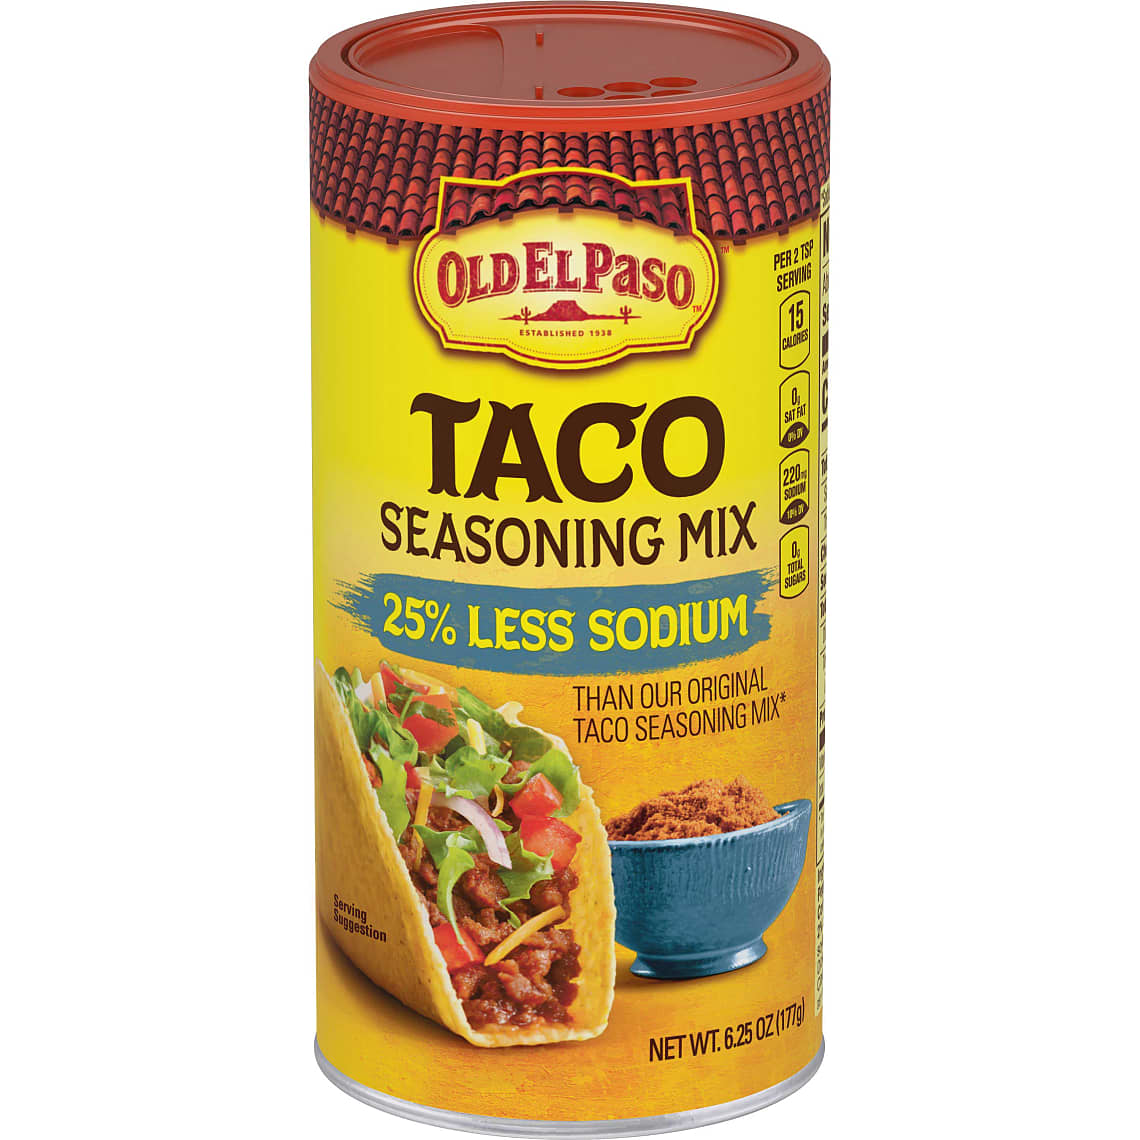 Old El Paso 25% Less Sodium Taco Seasoning Mix, 6.25 oz